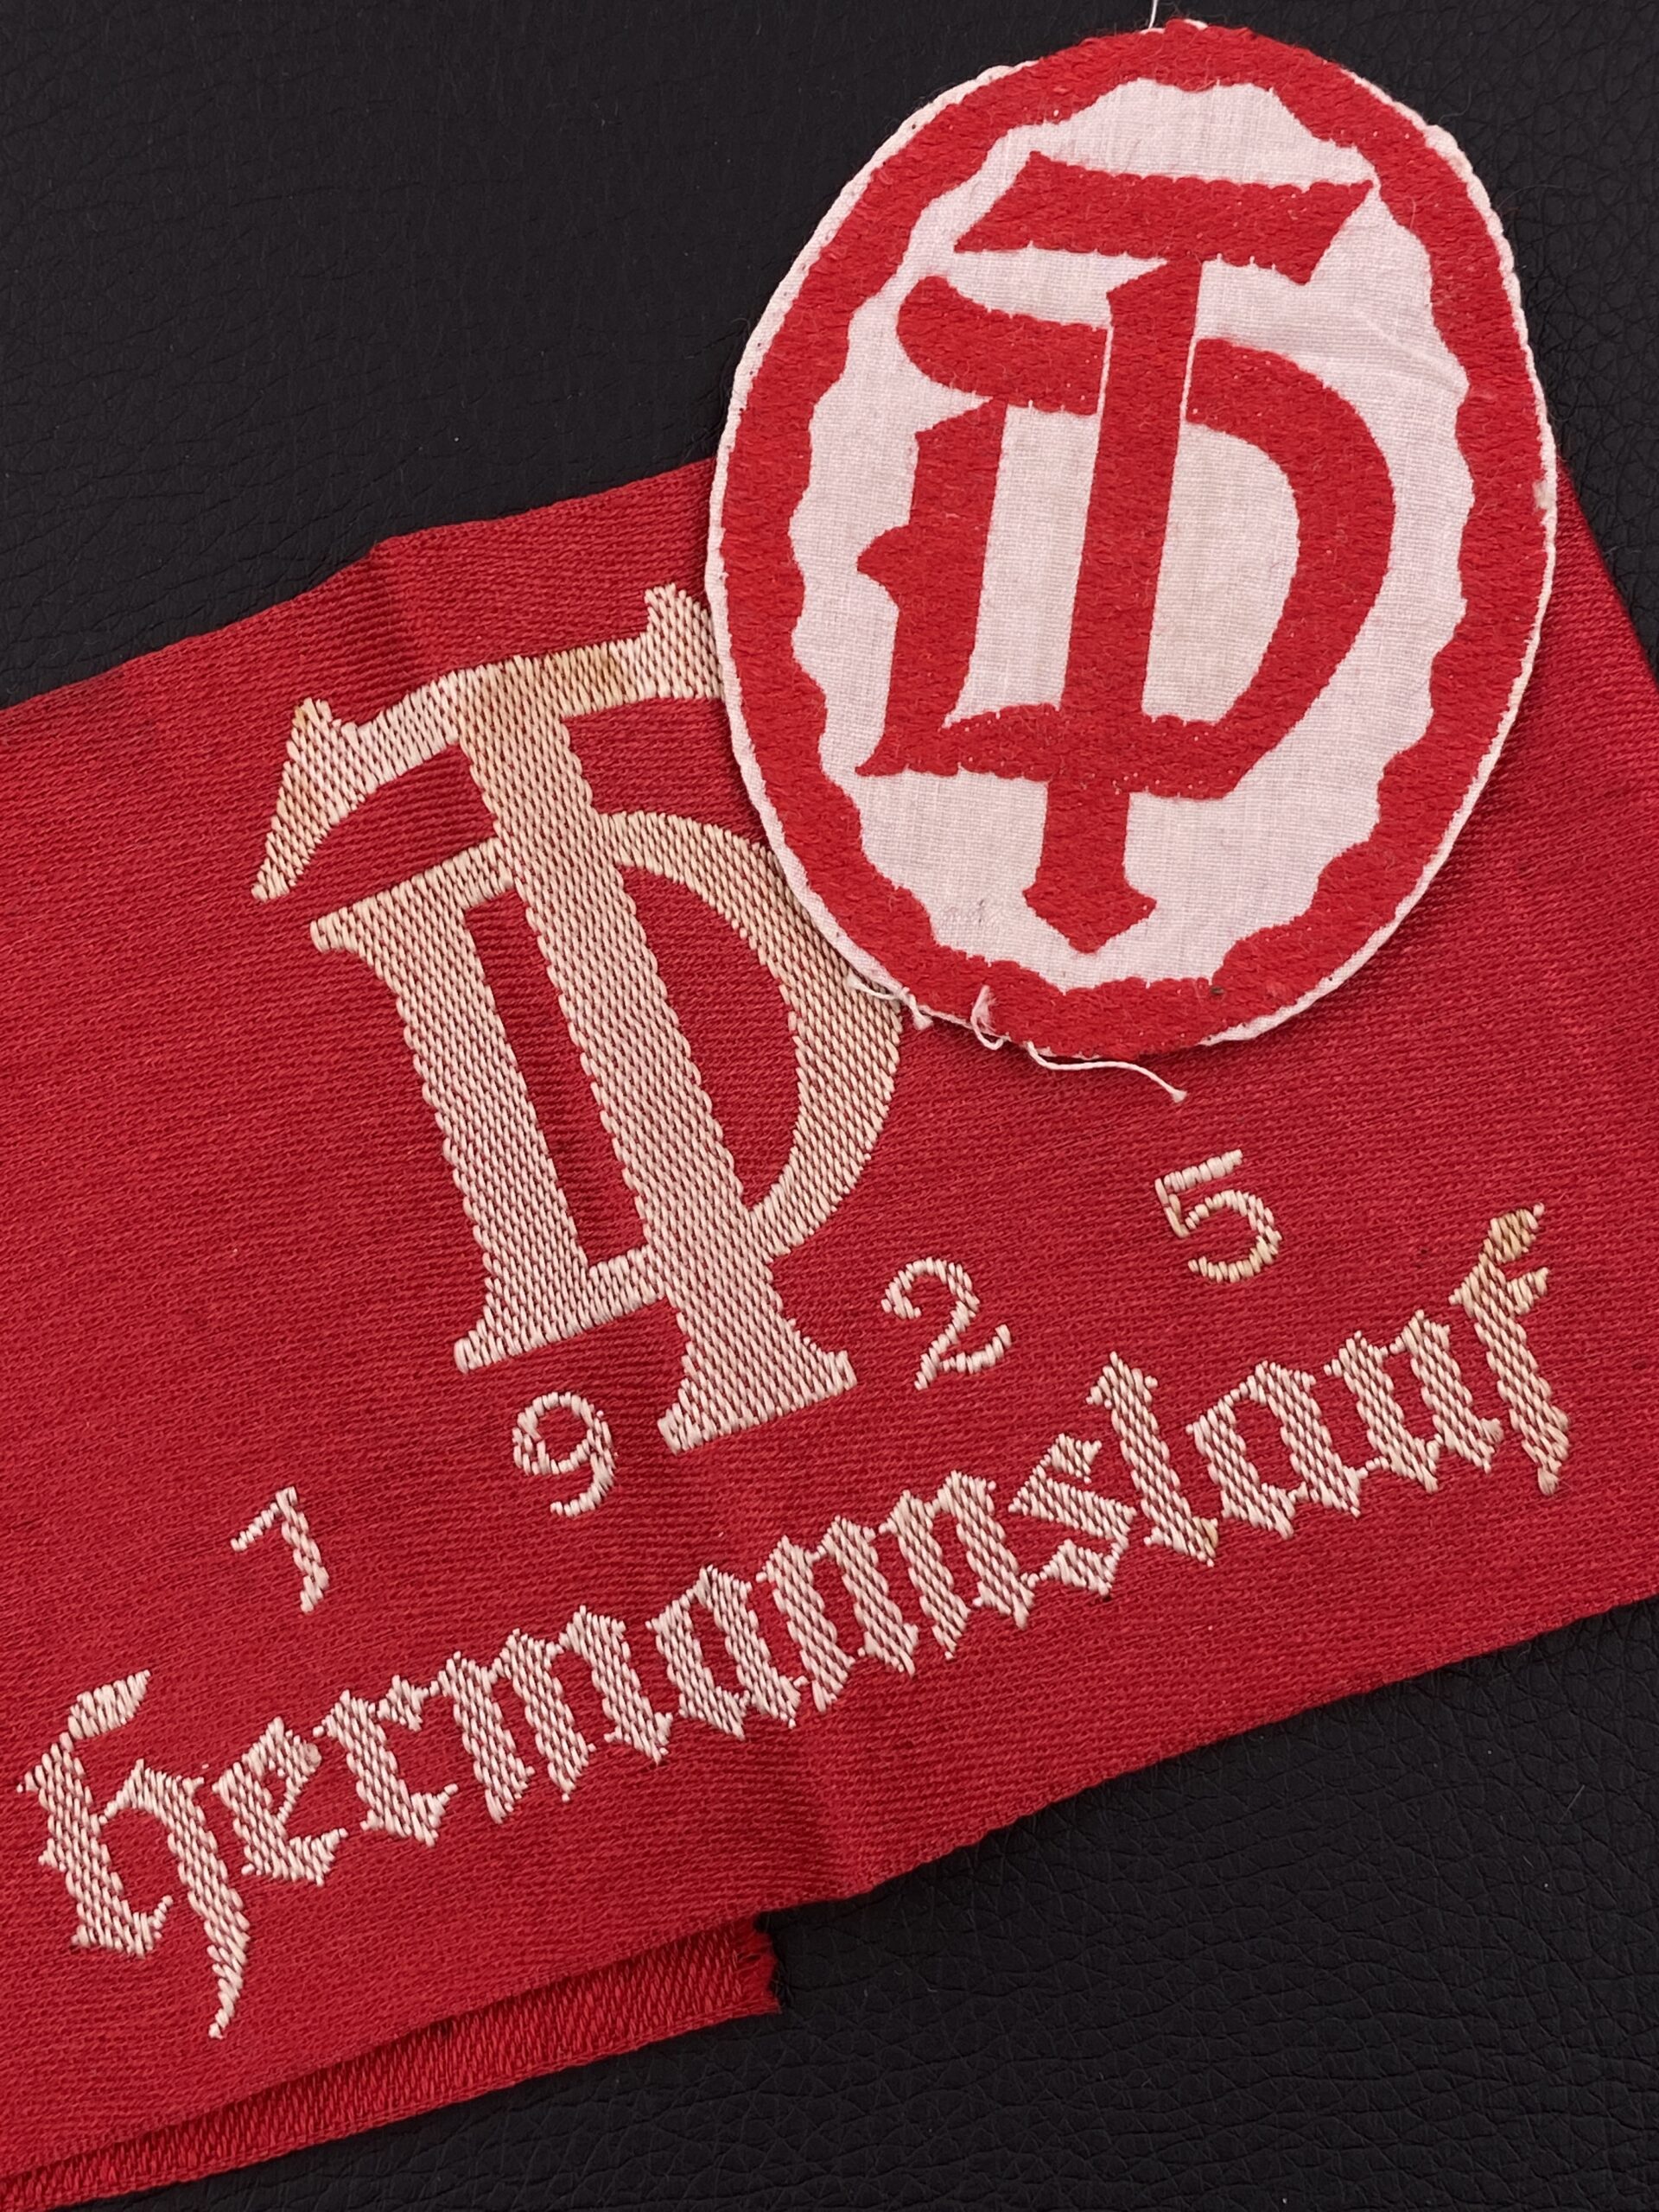 Комплект из повязки и нарукавной нашивки Немецкого Гимнастического союза DT (Deutsche Turnerbund).